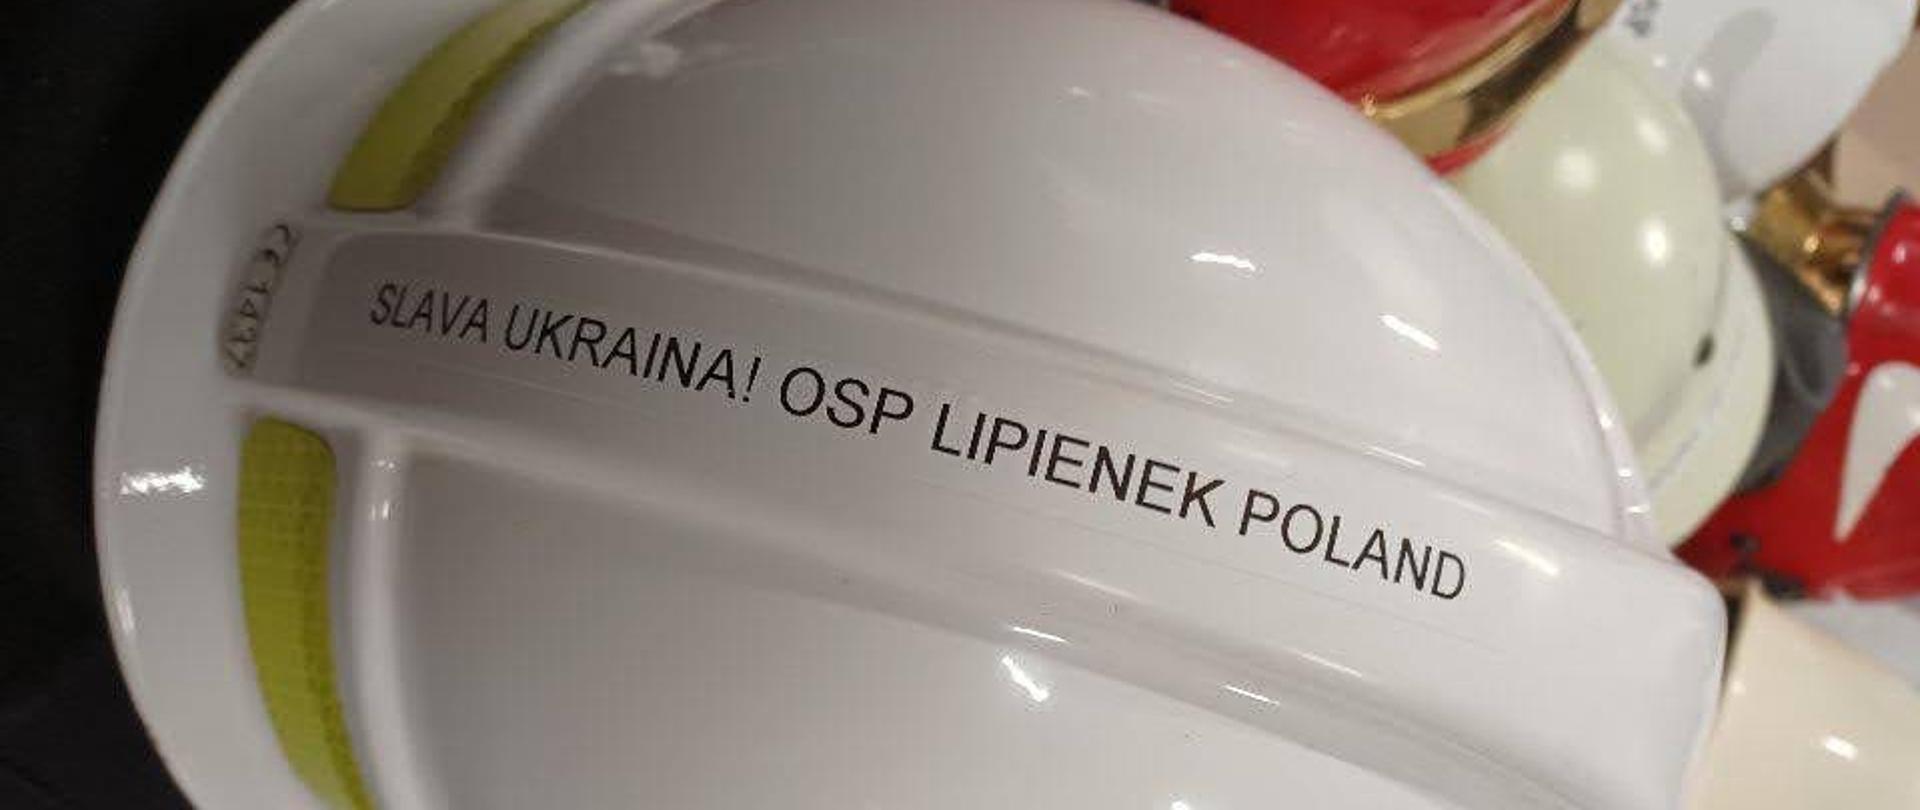 Hełm od OSP Lipienek dla strażaków z Ukrainy